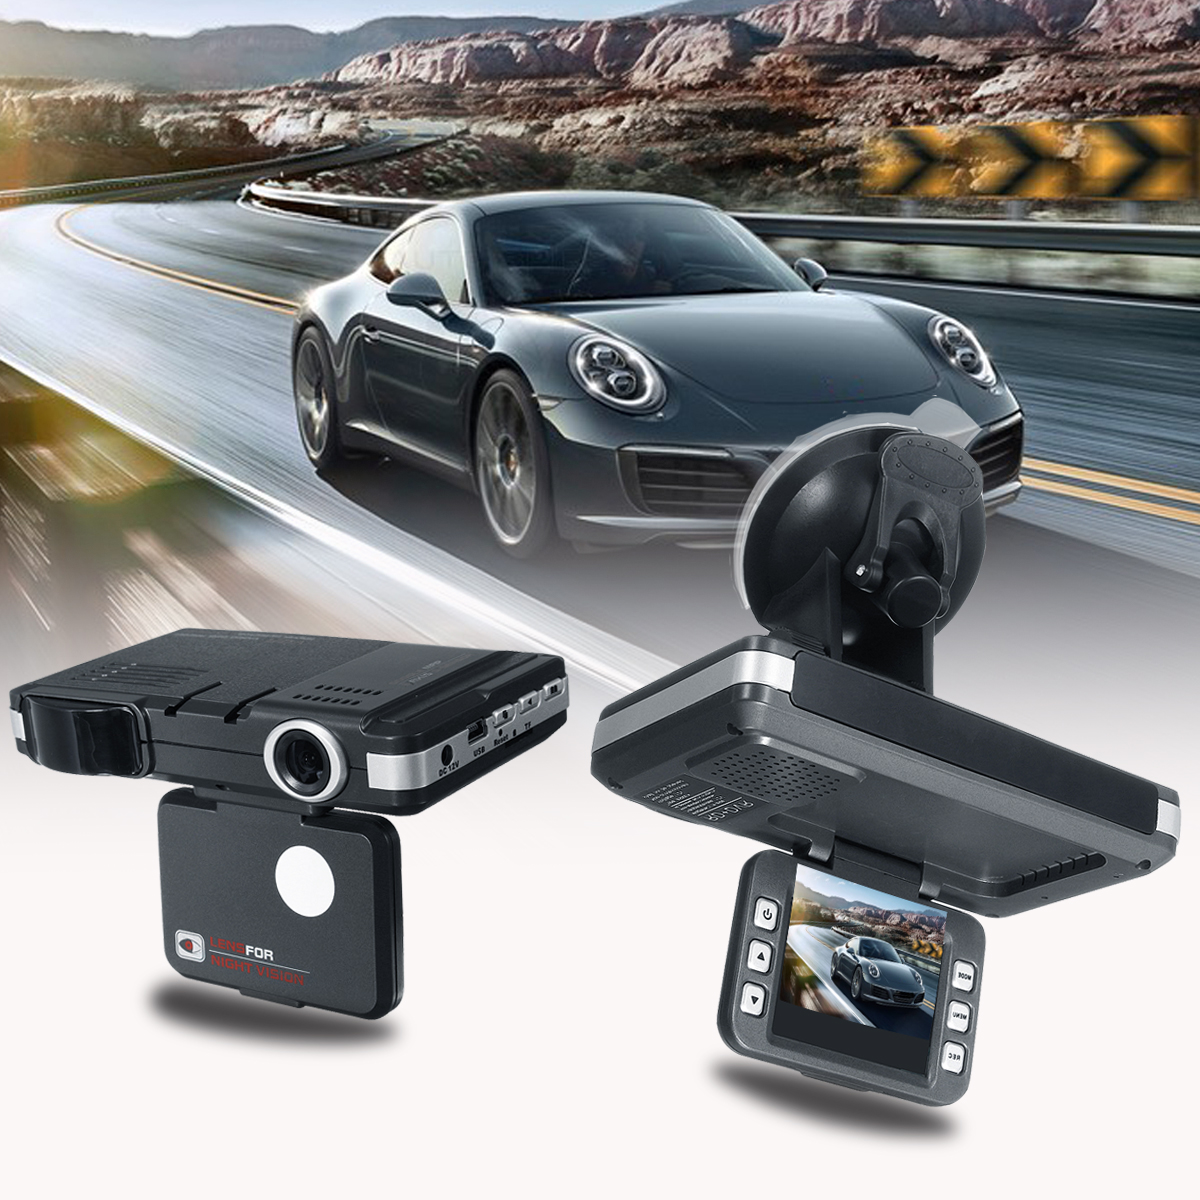 Качественный видеорегистратор доступной цене. Видеорегистратор Radar Speed + 2in1. DVR for car with Radar Detector. Автомобильный видеорегистратор rsnt96220, 1 камера,.